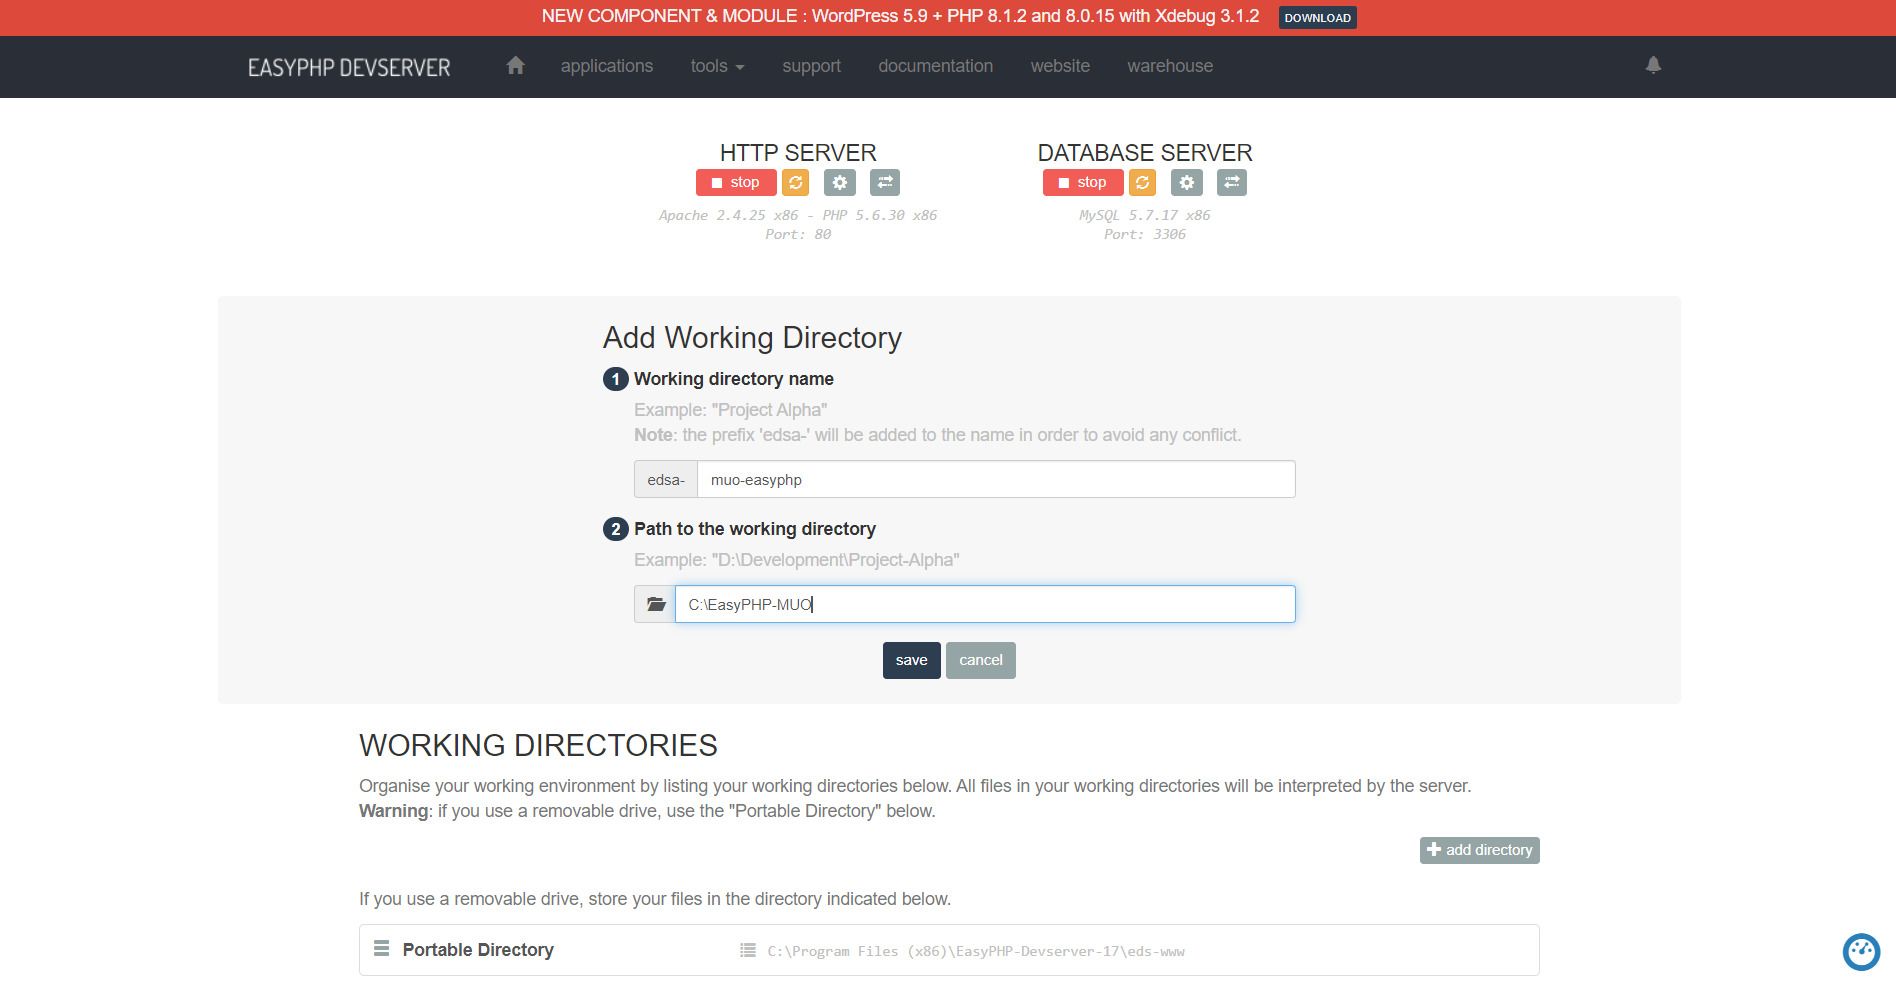 easyphp aggiunge una nuova directory di lavoro